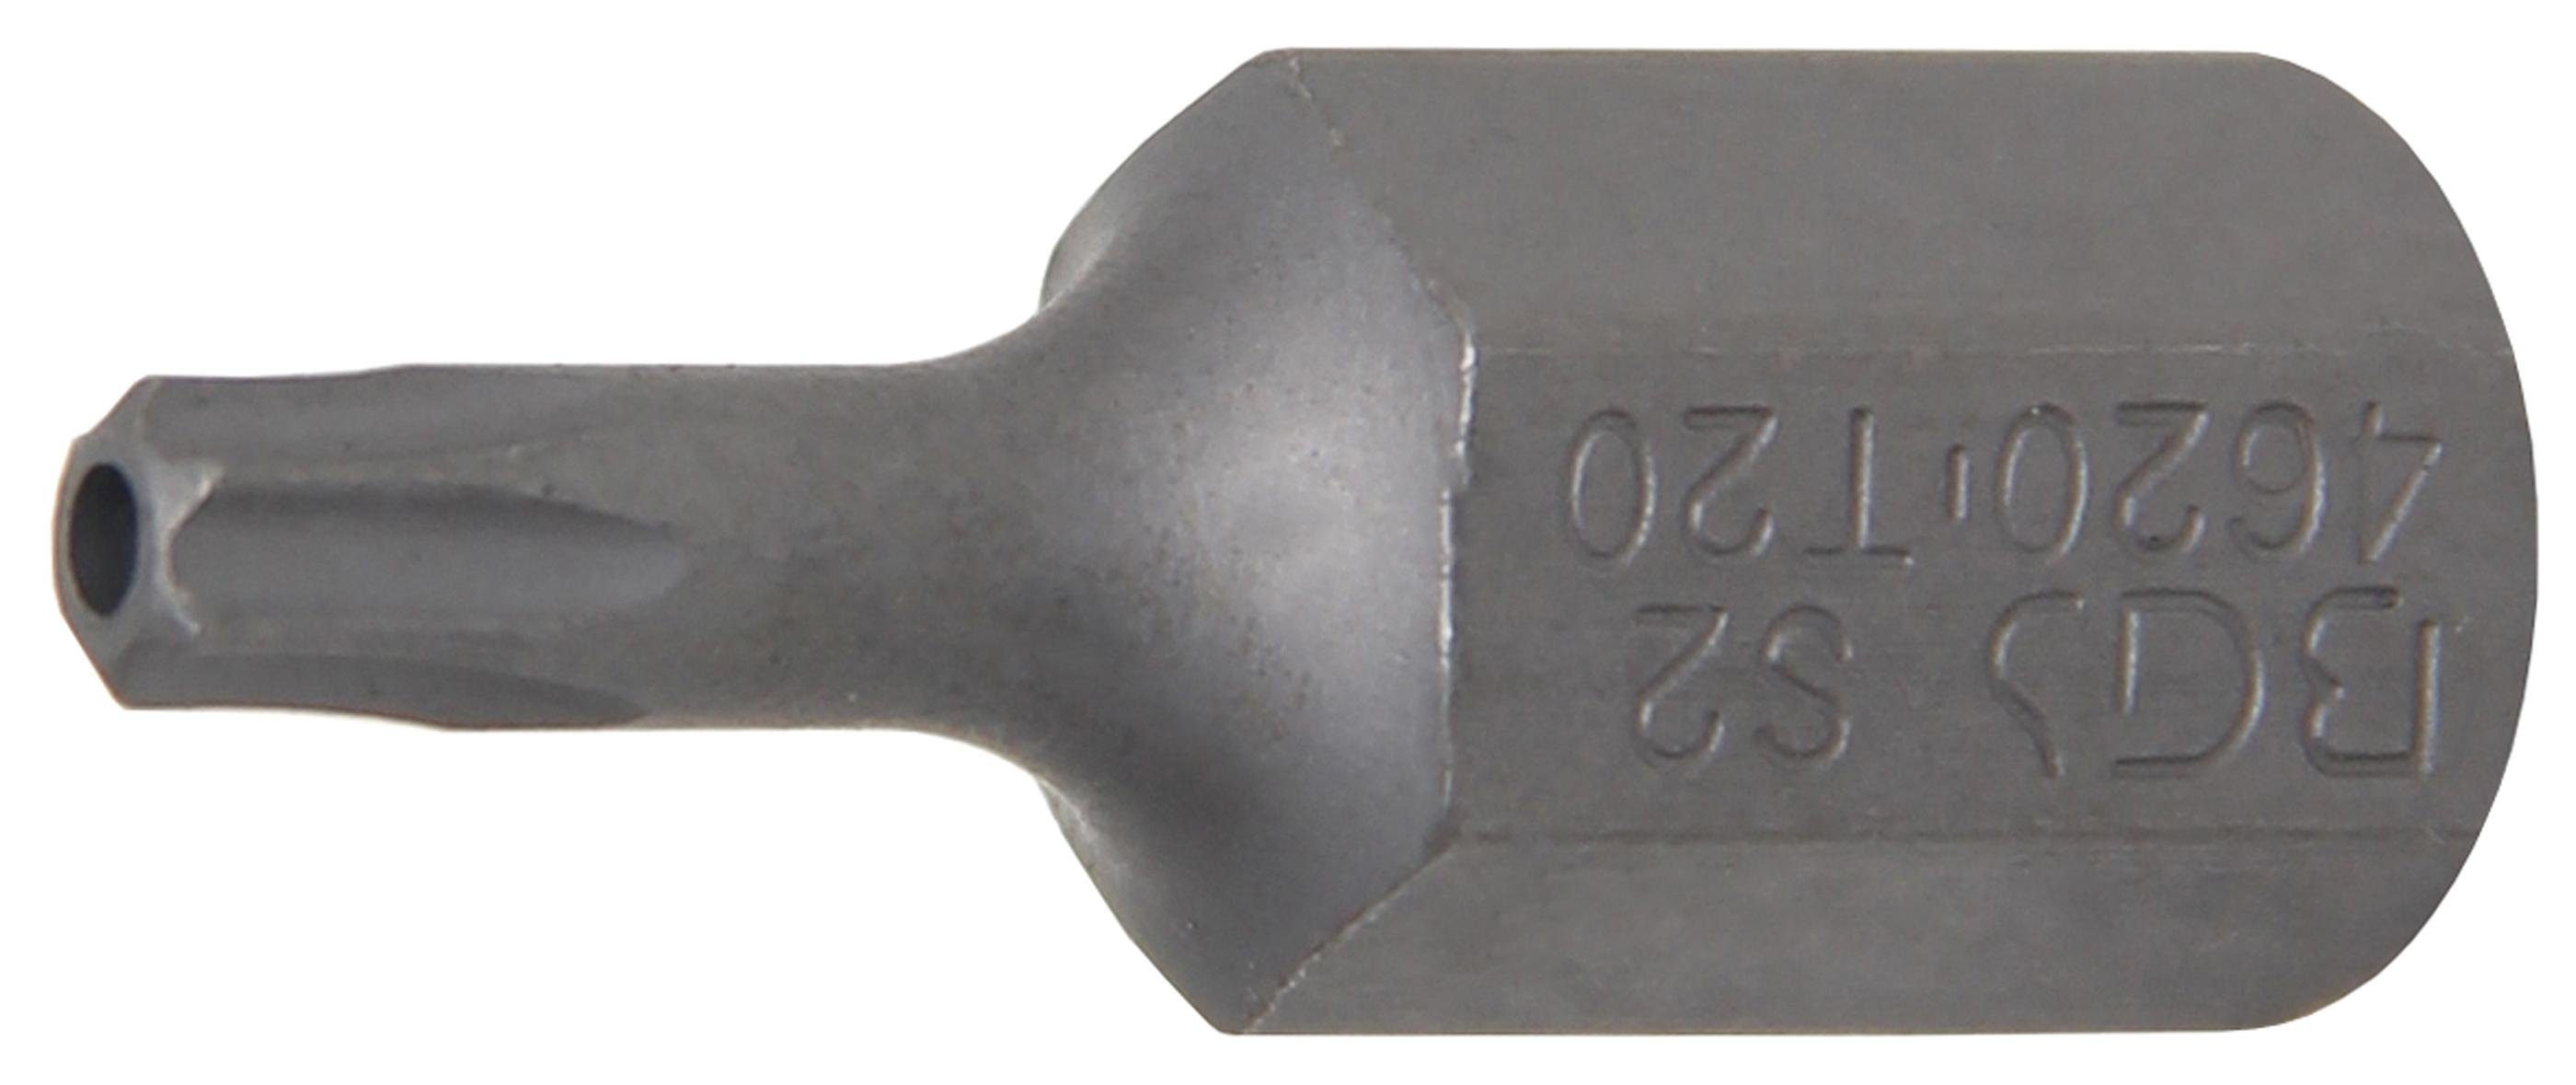 BGS technic Bit-Schraubendreher Bit, Länge 30 mm, Antrieb Außensechskant 10 mm (3/8), T-Profil (für Torx) mit Bohrung T20 | Schraubendreher